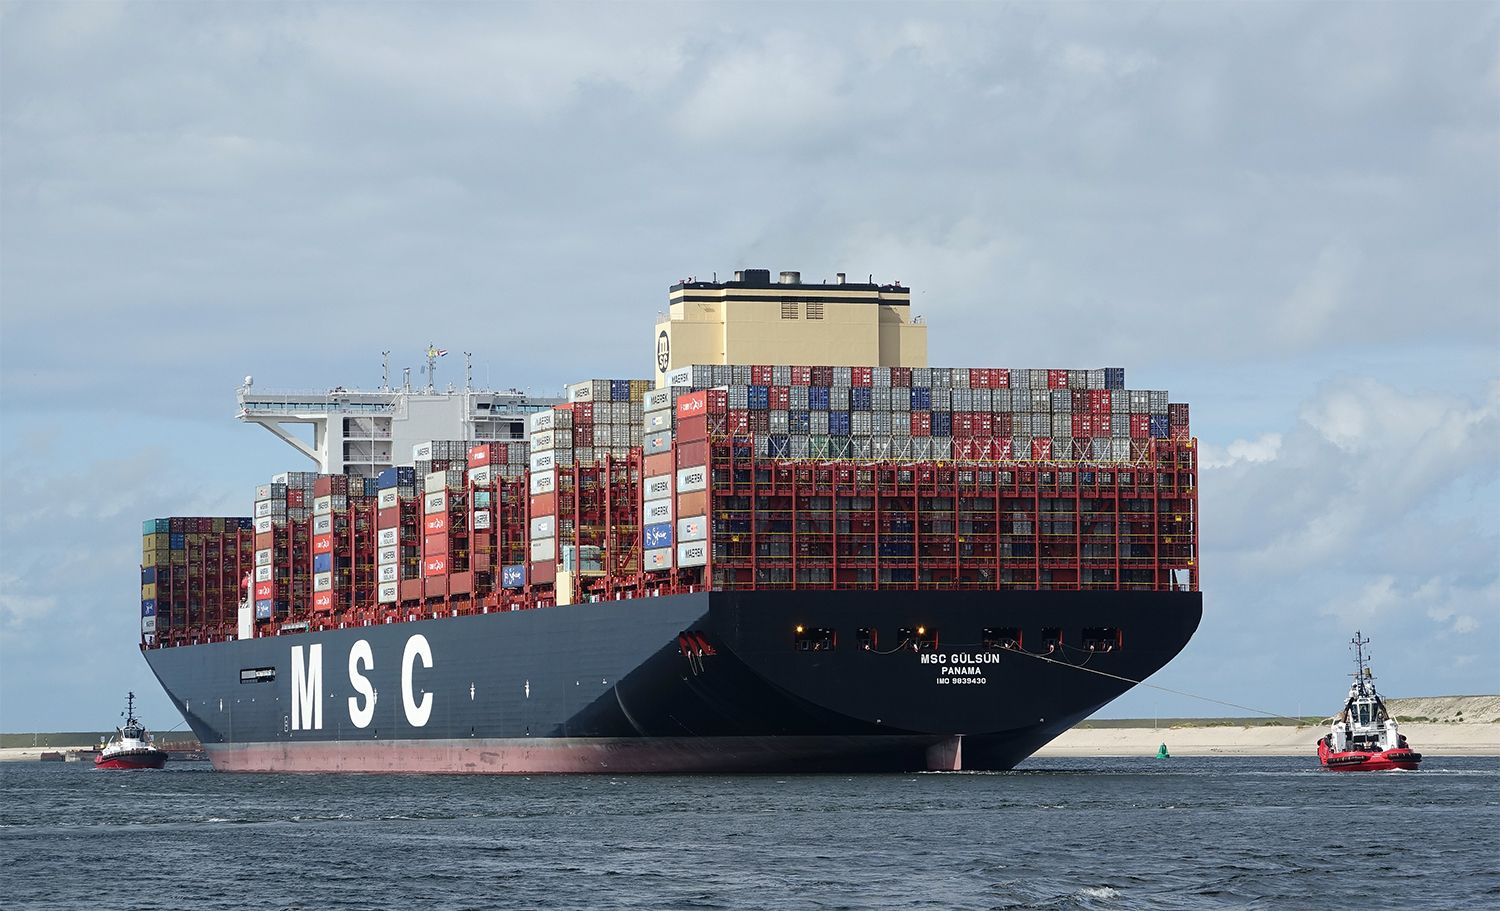 MSC Gülsün het grootste containerschip ter wereld. Het 400 meter lange en 62 meter brede schip heeft een capaciteit van 23.756 TEU (20 voets standaardcontainers). De MSC Gülsün is het eerste containerschip dat Rotterdam binnenliep met over de breedte 24 containers naast elkaar. (Foto Kees Torn / Havenbedrijf Rotterdam).